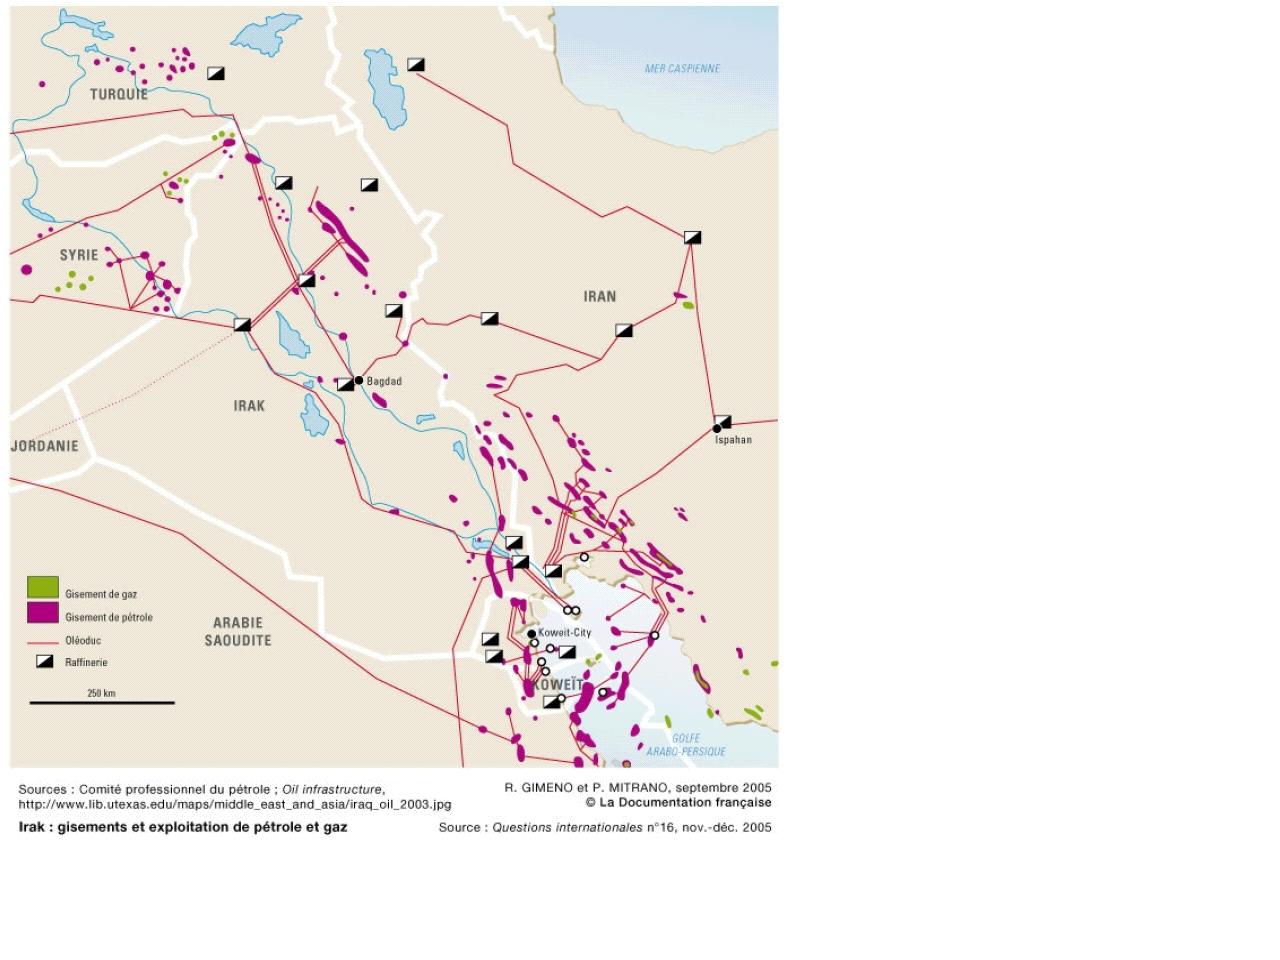 Irak: gisements et exploitation de pétrole et de gaz